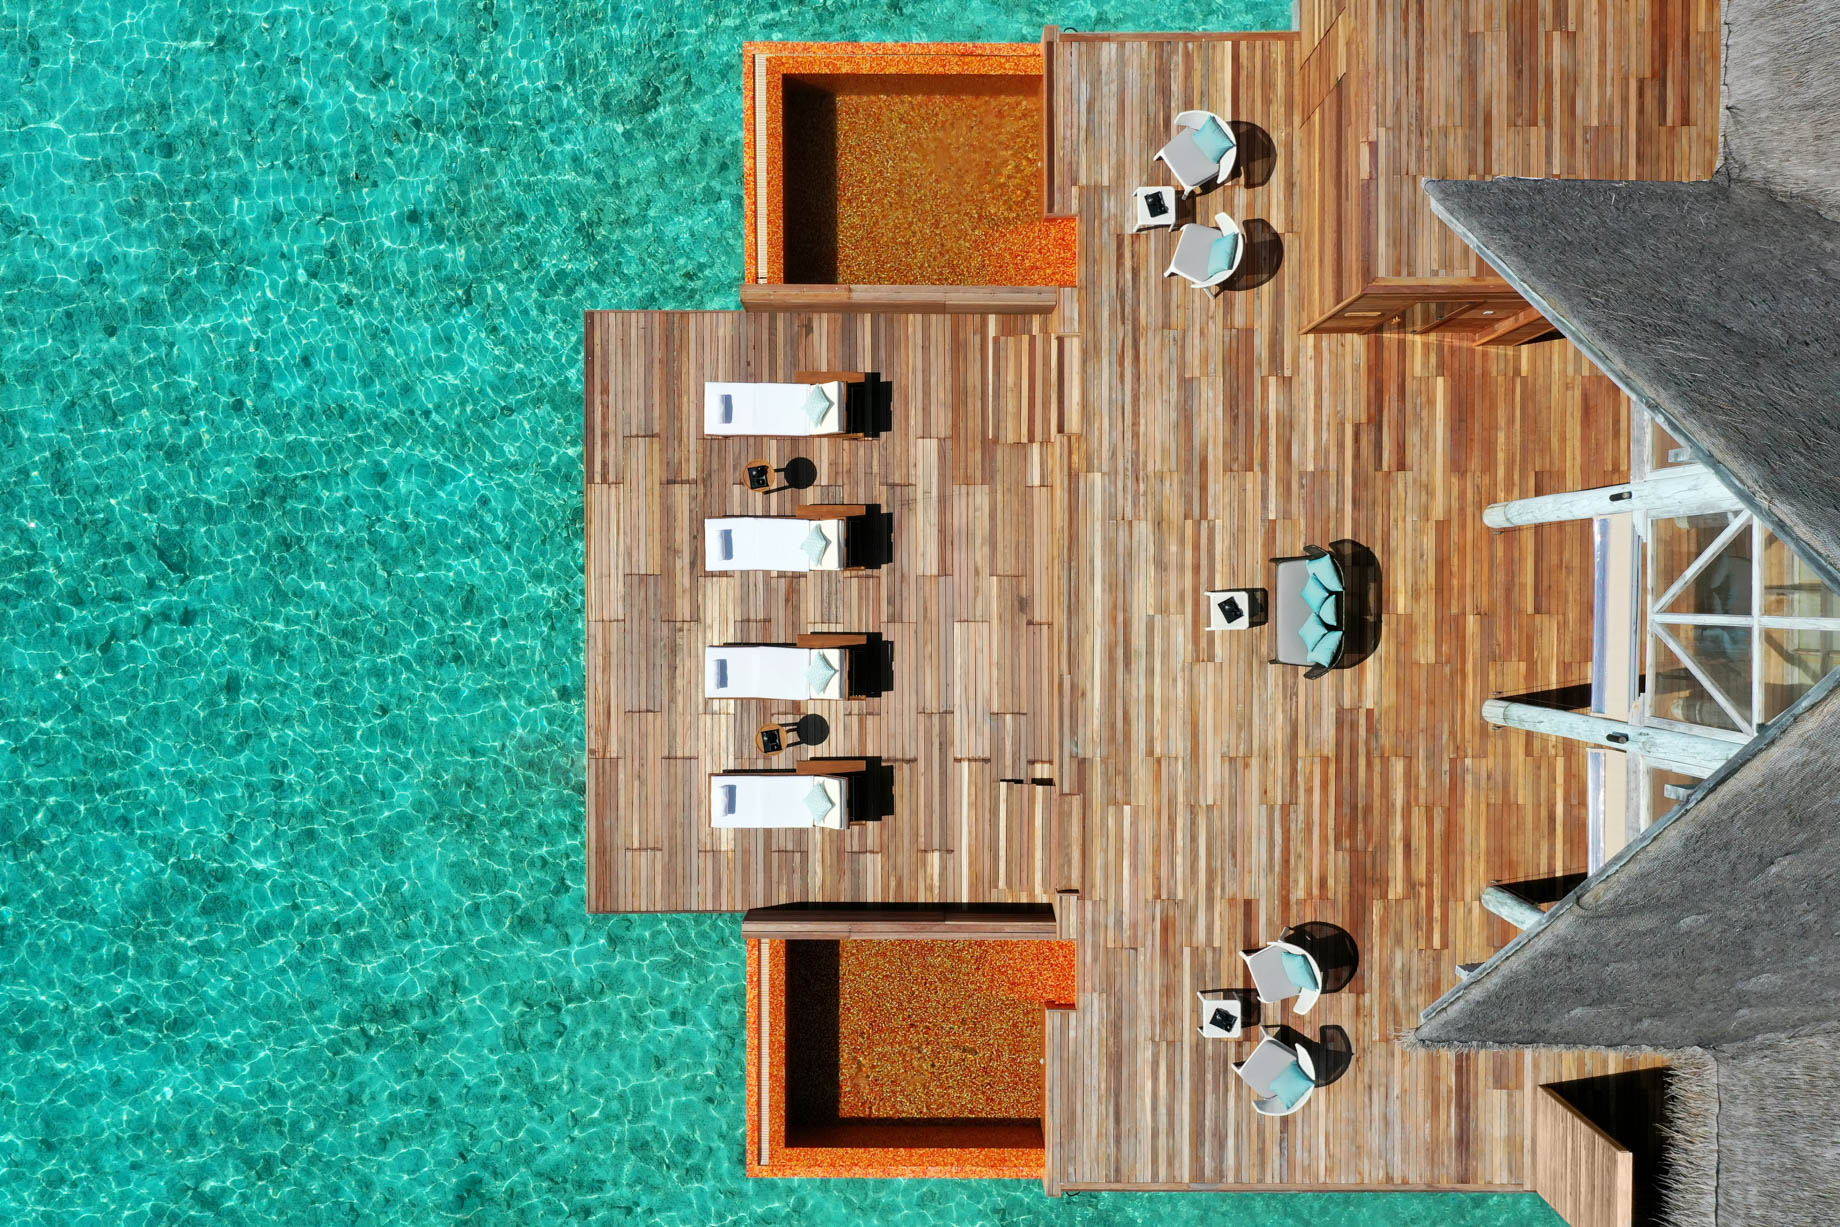 Anantara Kihavah Maldives Villas Resort – Baa Atoll, Maldives – Spa Relaxation Deck Overhead Aerial View